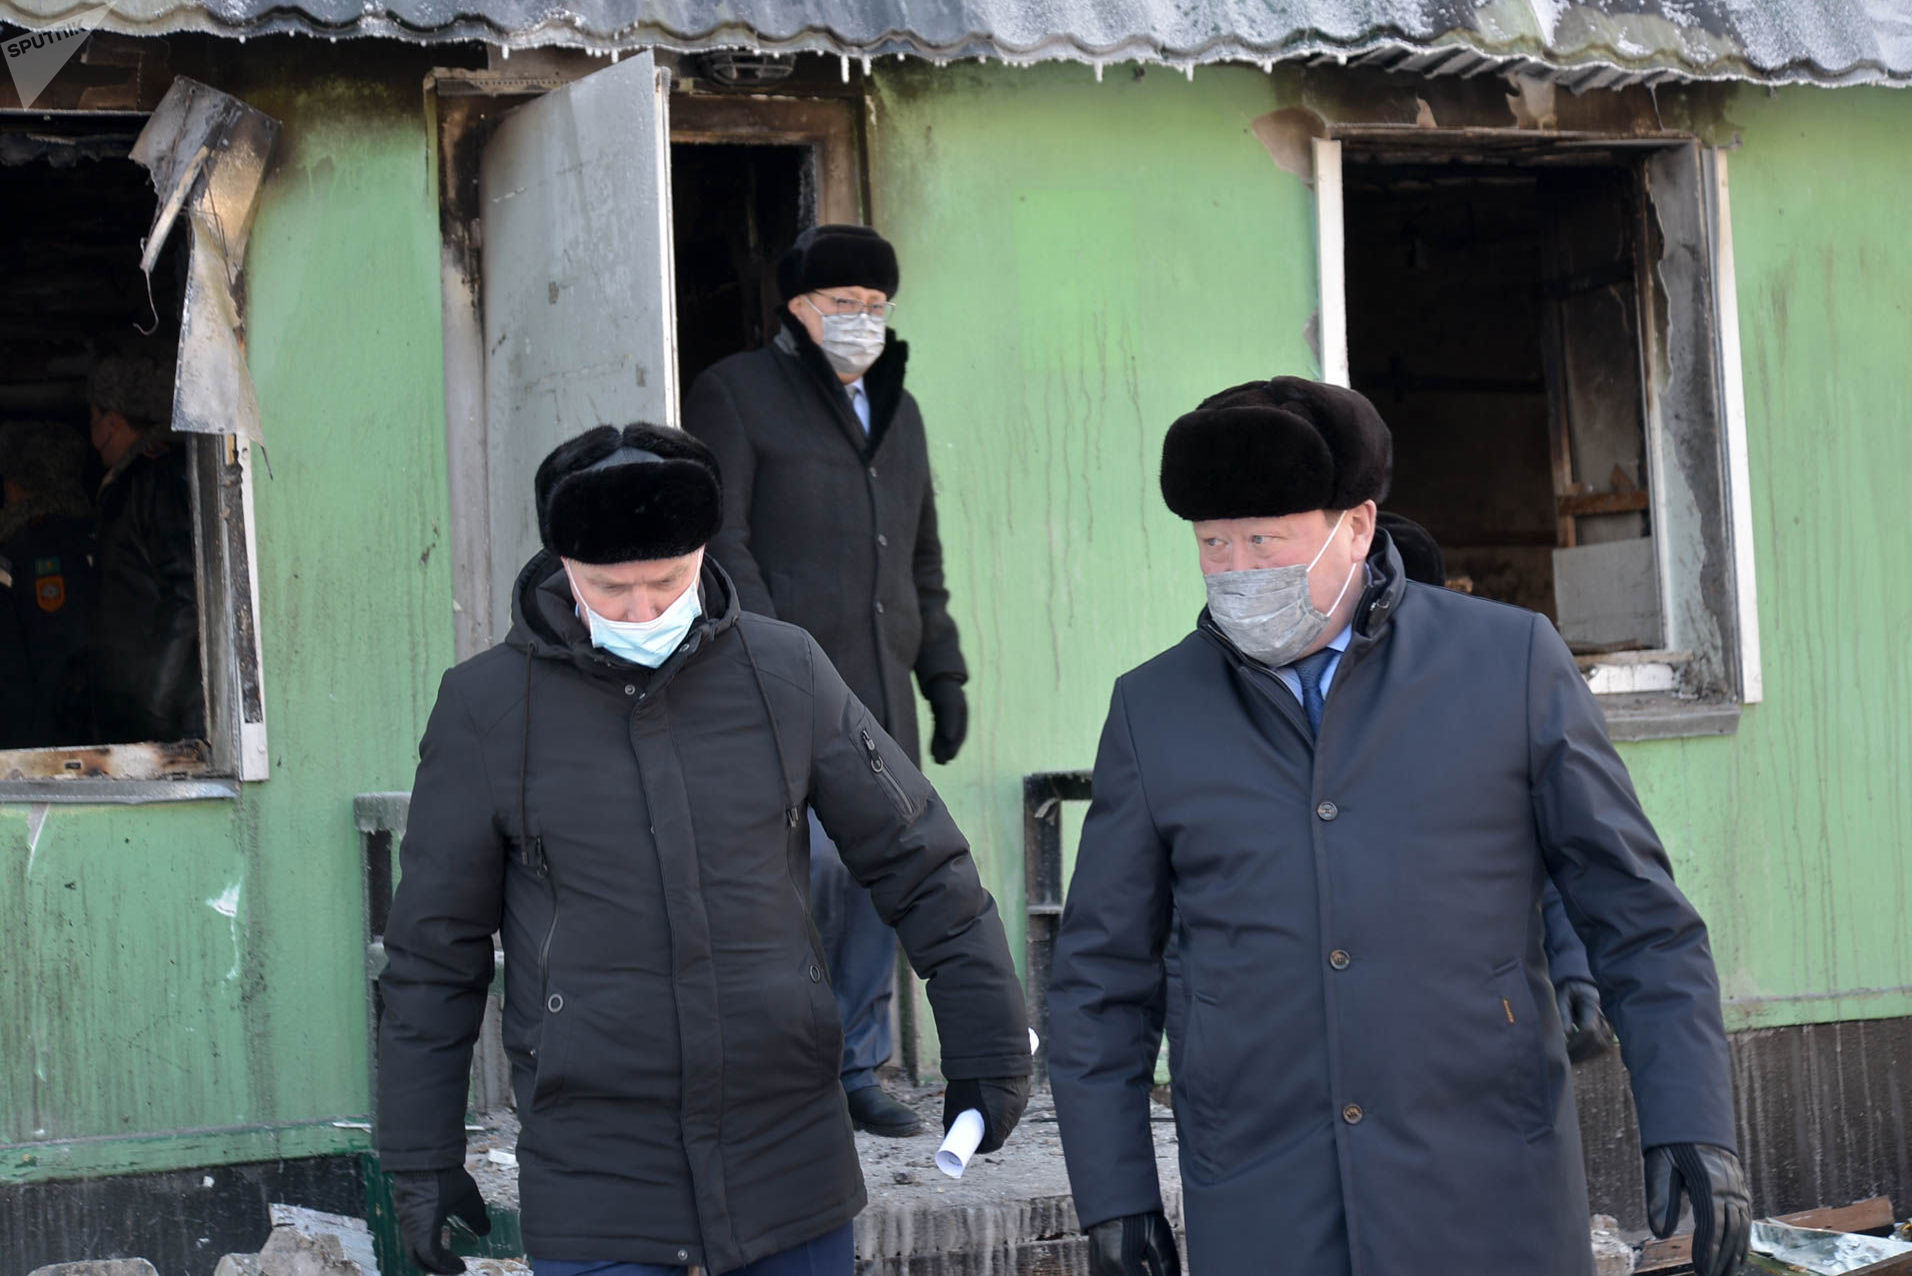 Аким на месте ЧП, где произошел взрыв газа в жилом доме в Петропавловске